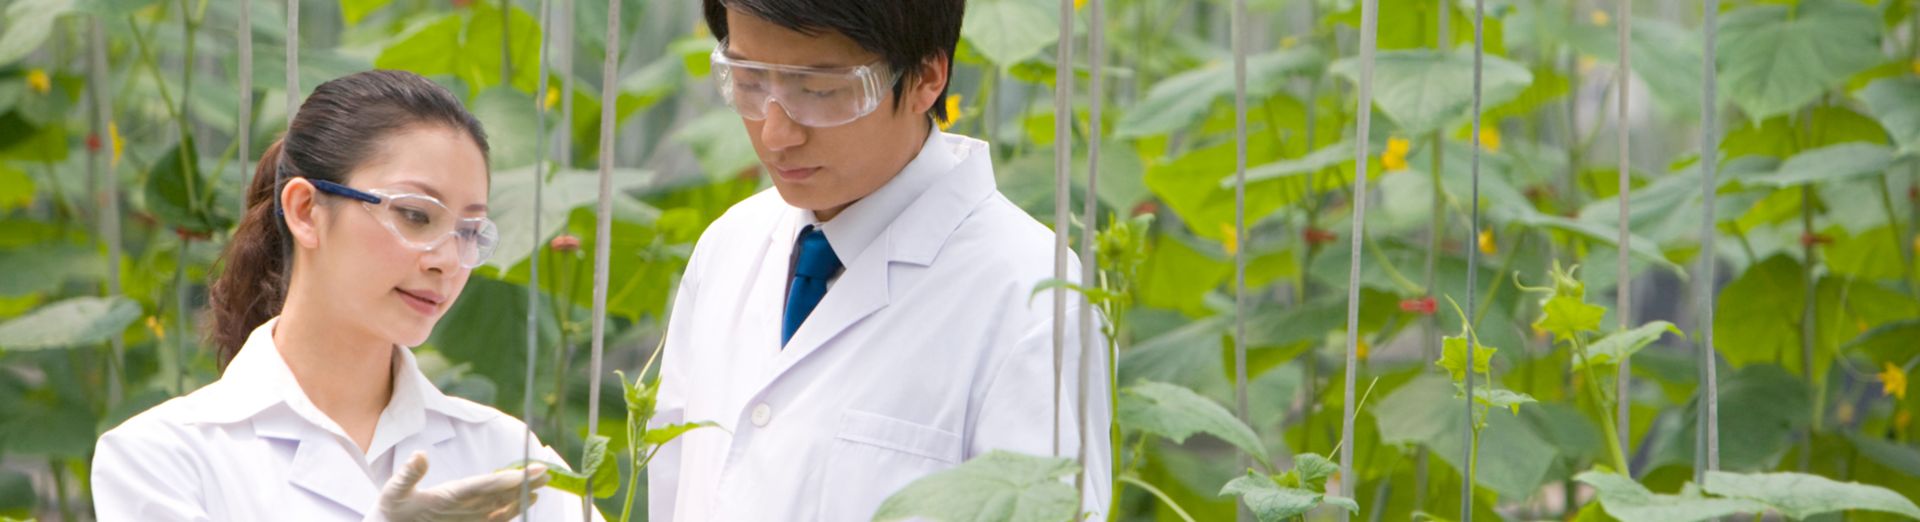 Naukowcy badający rośliny